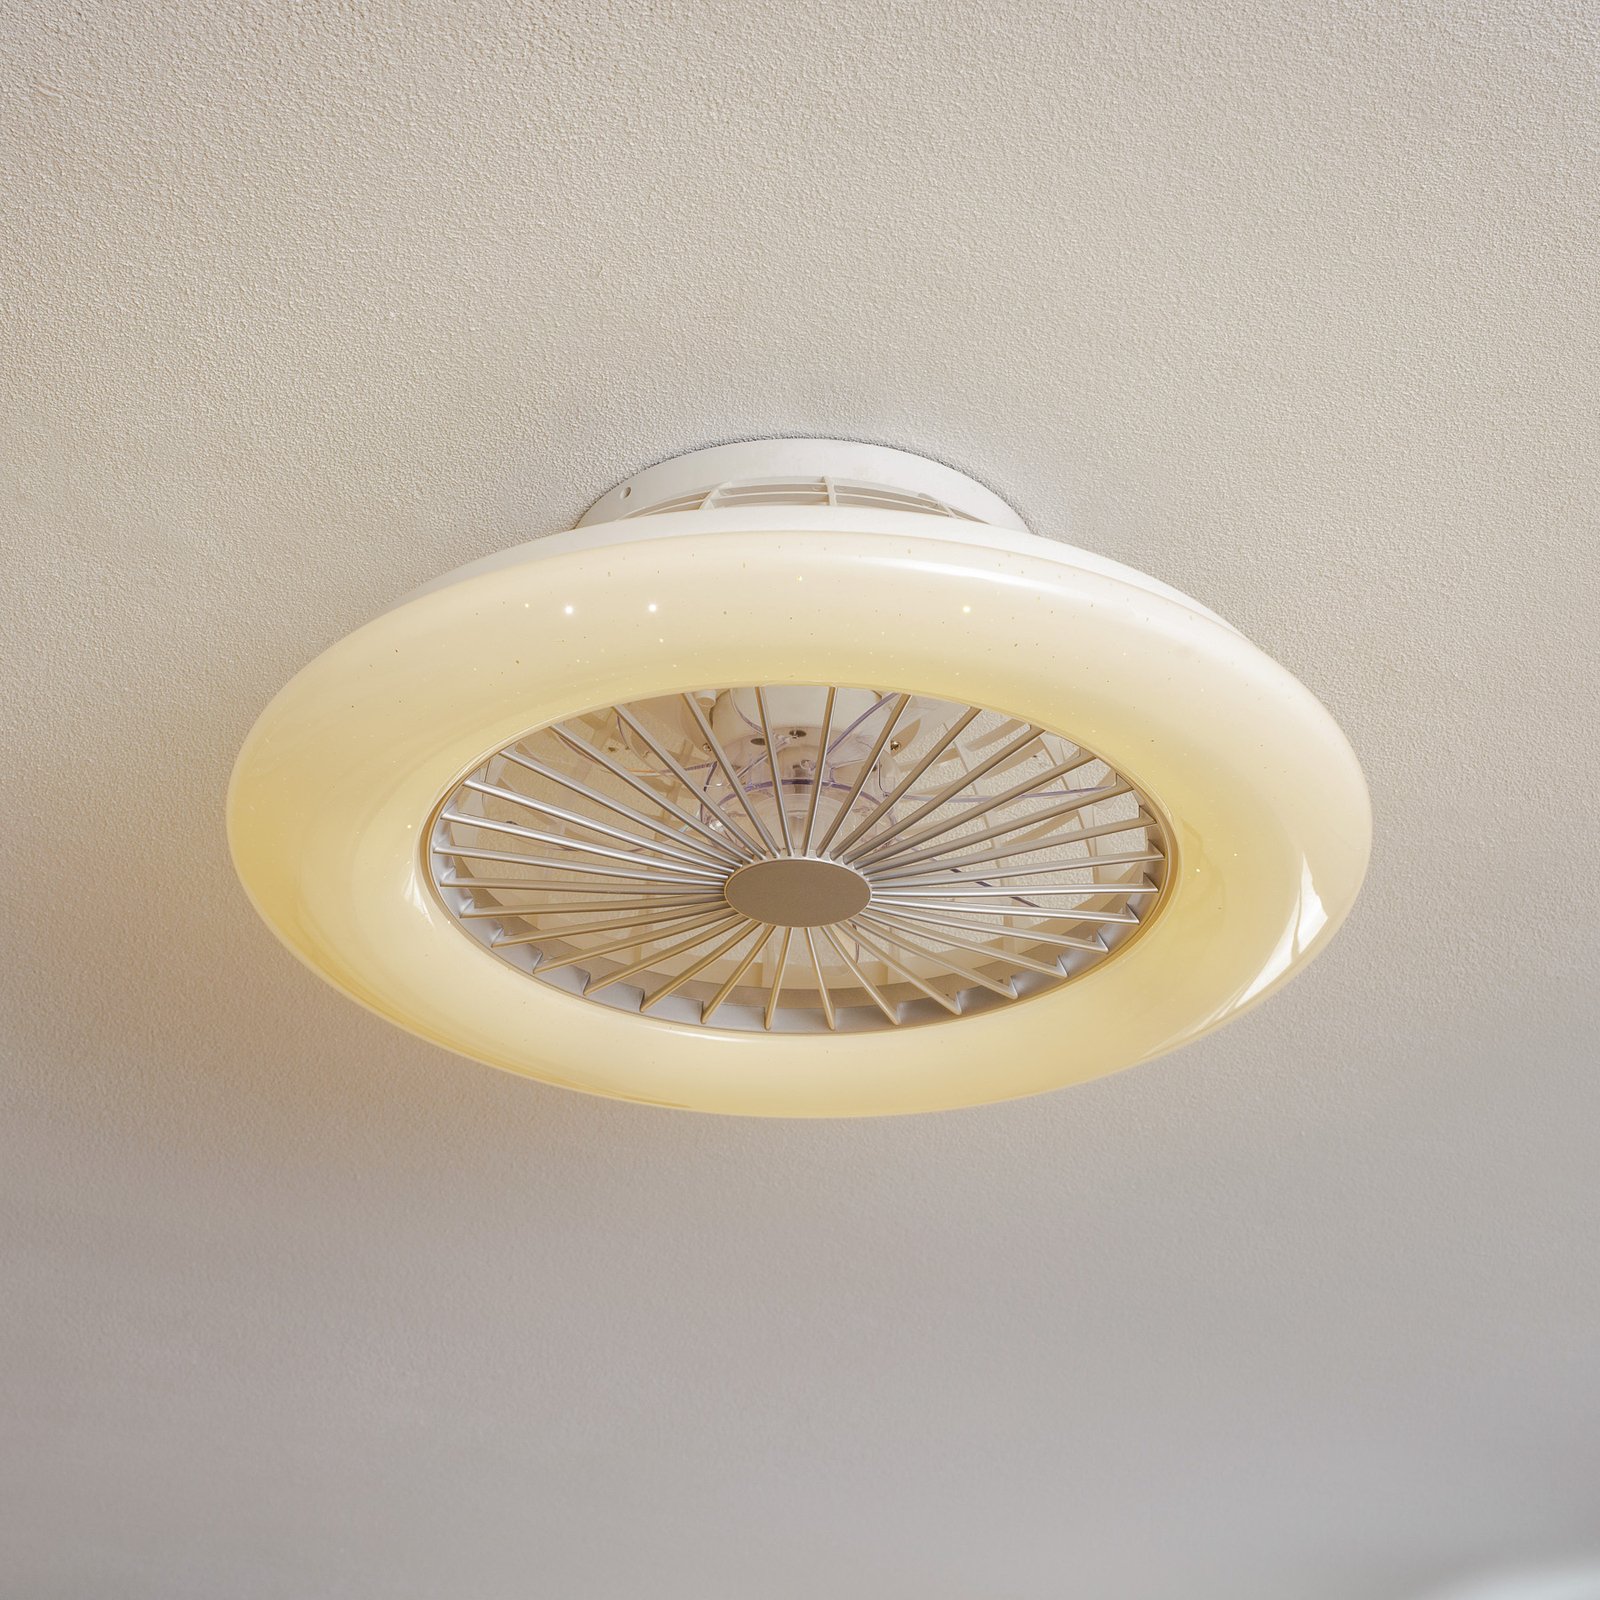 Starluna Vlado LED ceiling fan, white round RGB